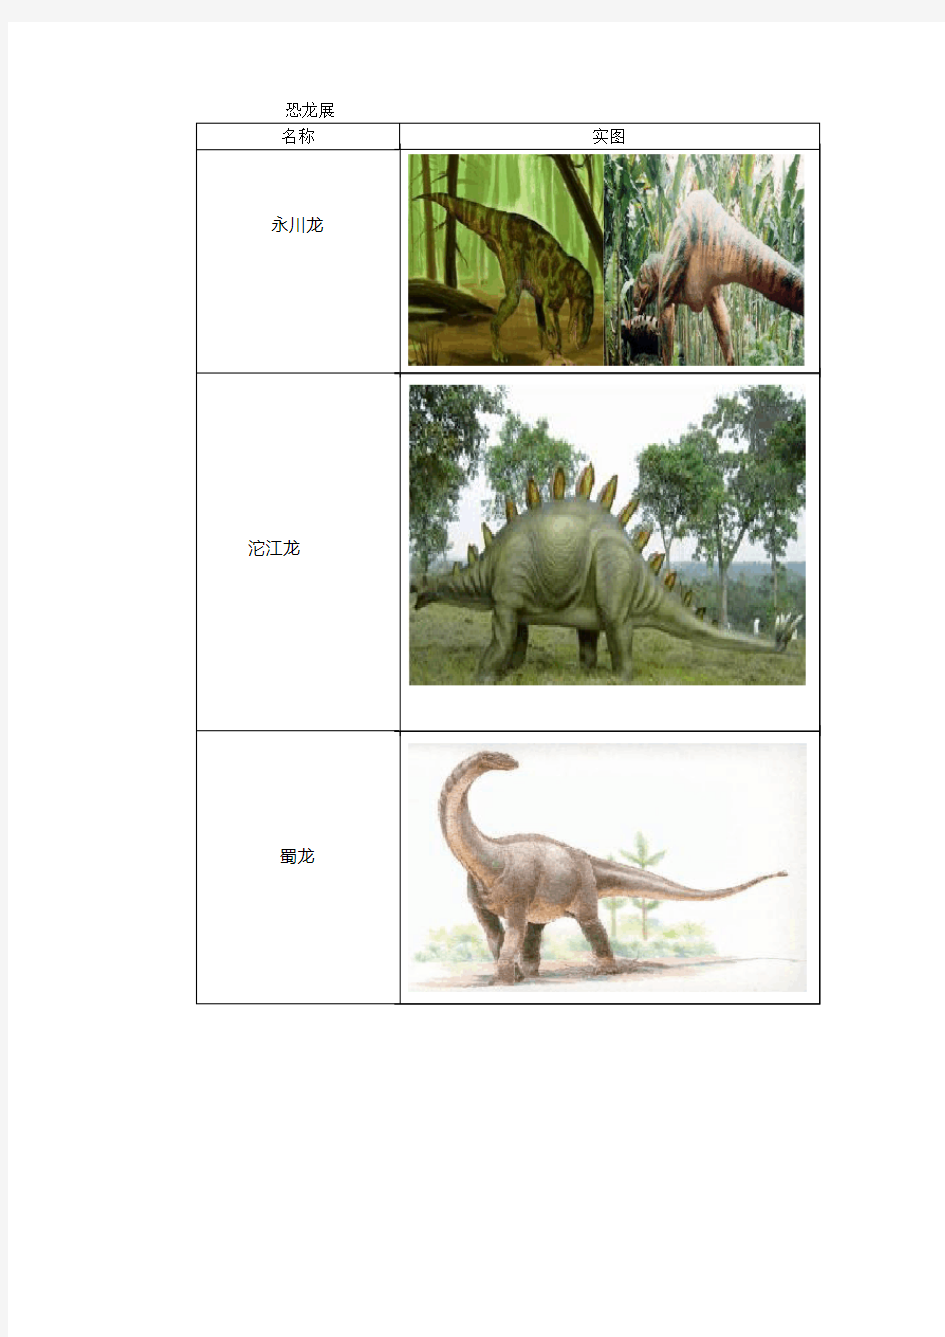 恐龙名称及图片